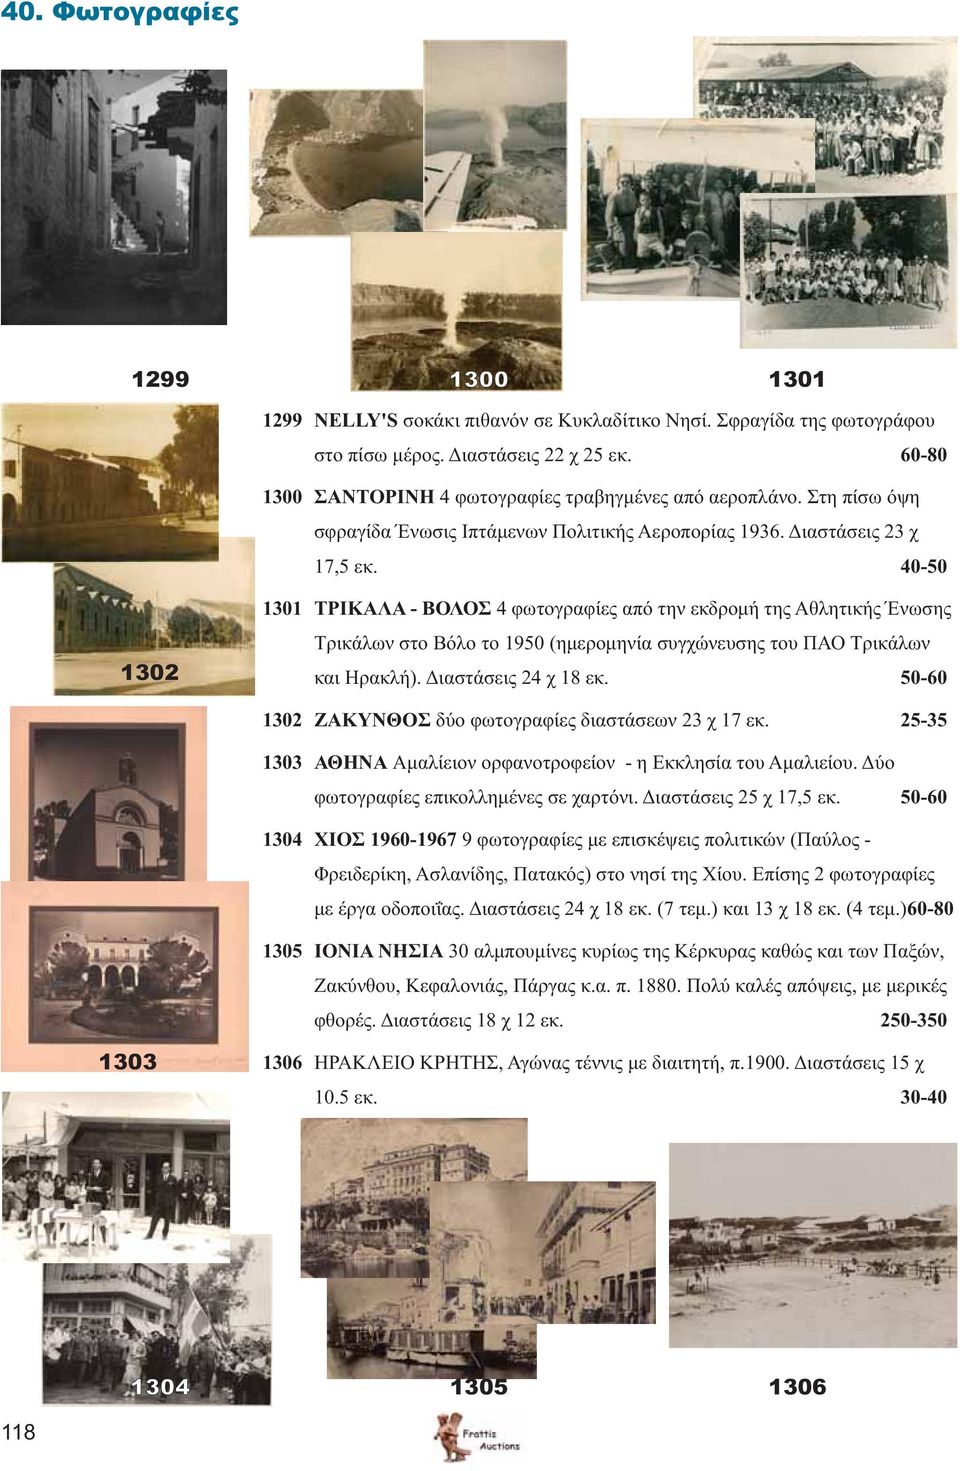 40-50 1302 1301 ΤΡΙΚΑΛΑ - ΒΟΛΟΣ 4 φωτογραφίες από την εκδρομή της Αθλητικής Ένωσης Τρικάλων στο Βόλο το 1950 (ημερομηνία συγχώνευσης του ΠΑΟ Τρικάλων και Ηρακλή). Διαστάσεις 24 χ 18 εκ.